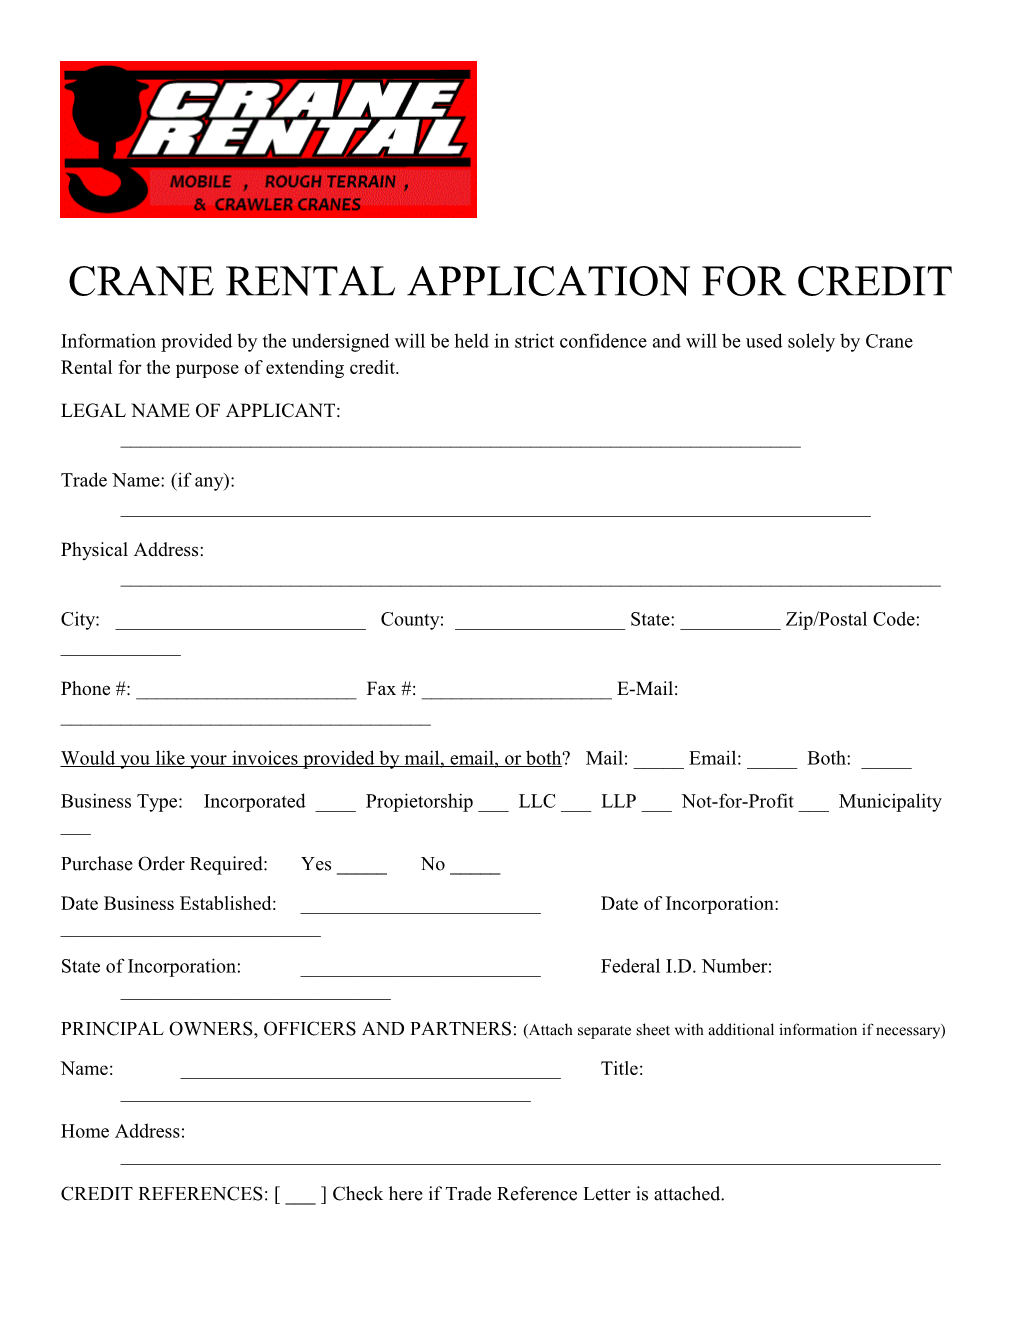 Crane Rental Application for Credit